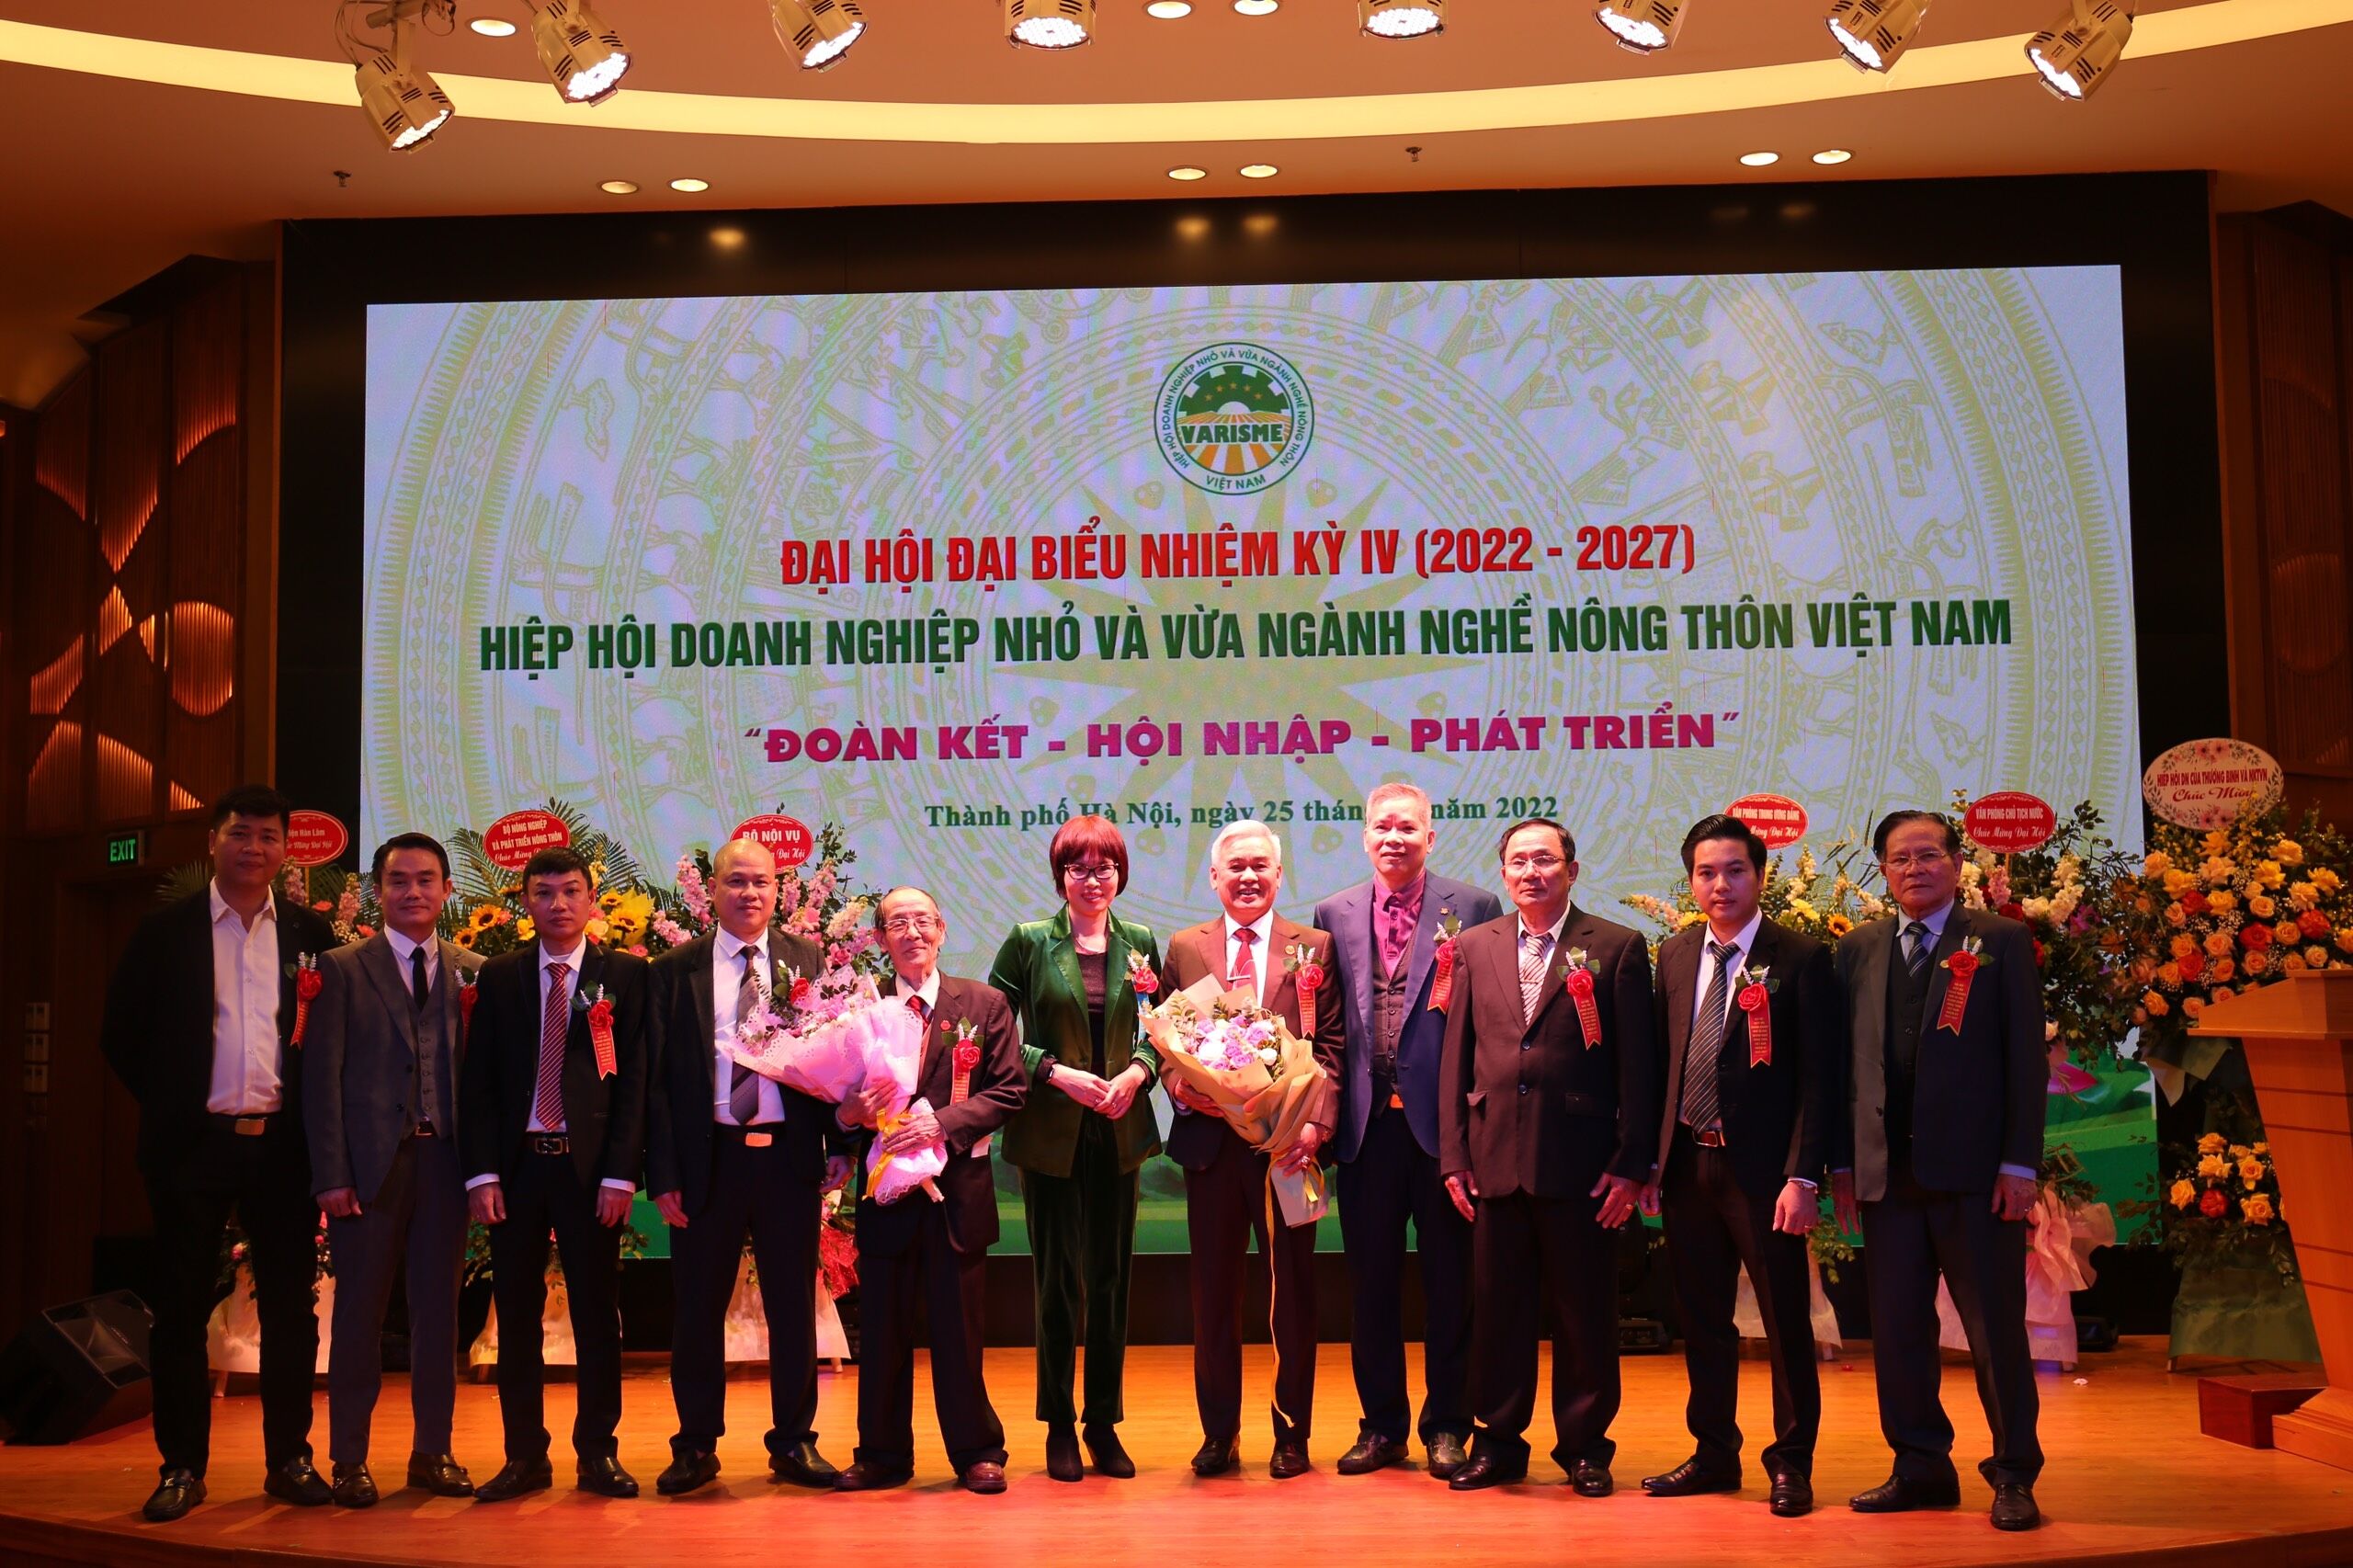 Ra mắt Ban Thường vụ mới của Hiệp hội Doanh nghiệp nhỏ và vừa ngành nghề nông thôn Việt Nam nhiệm kỳ IV.